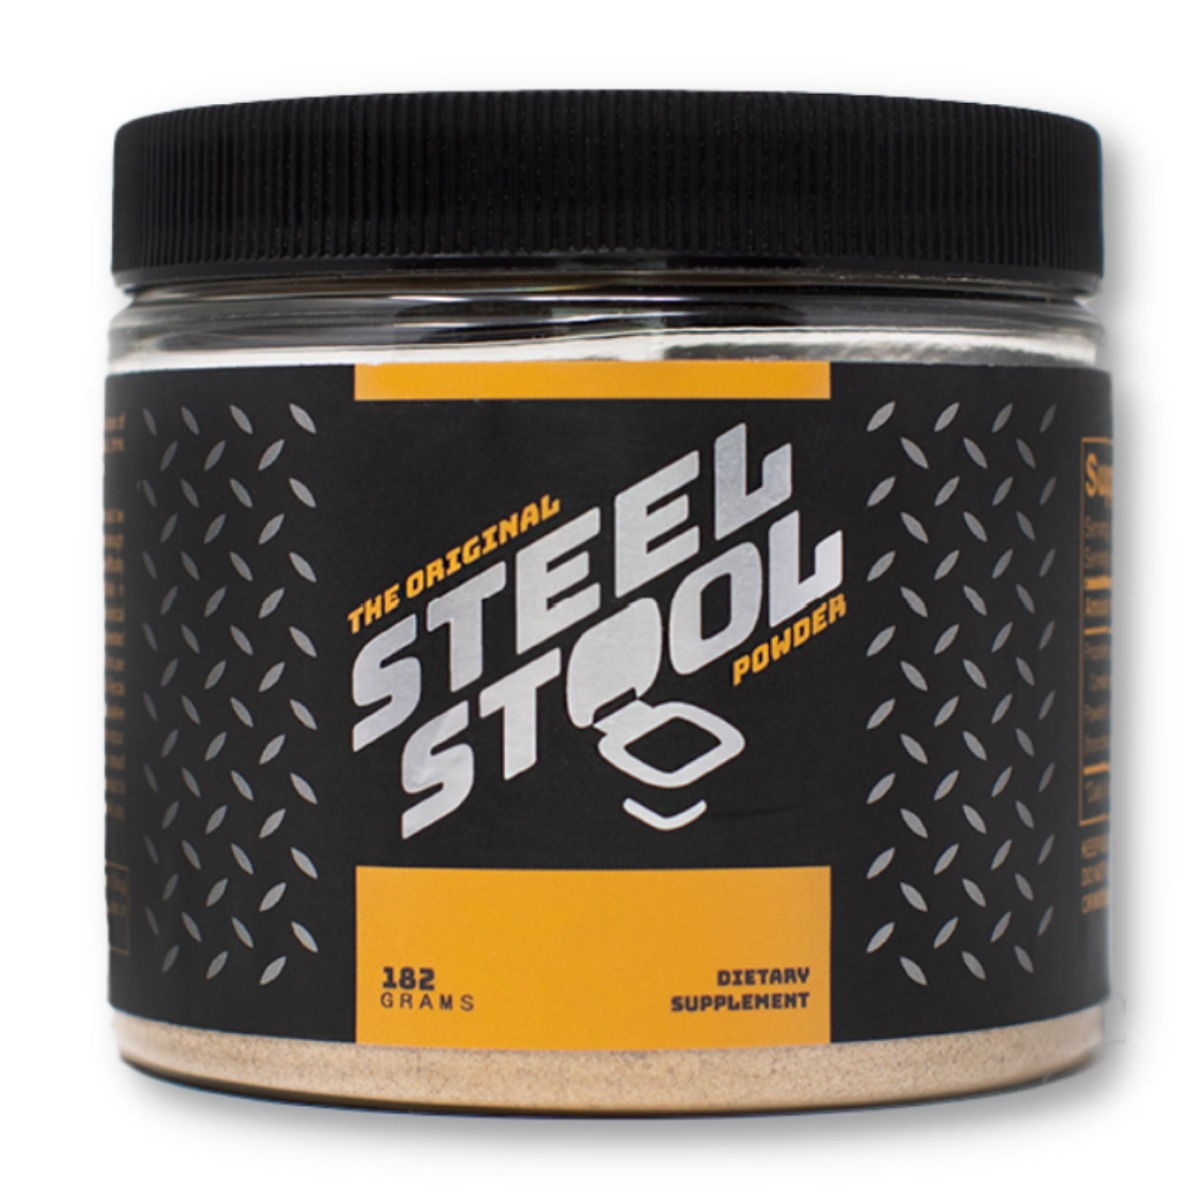 Image of Steel Stool Powder - 100% natuurlijke vezels